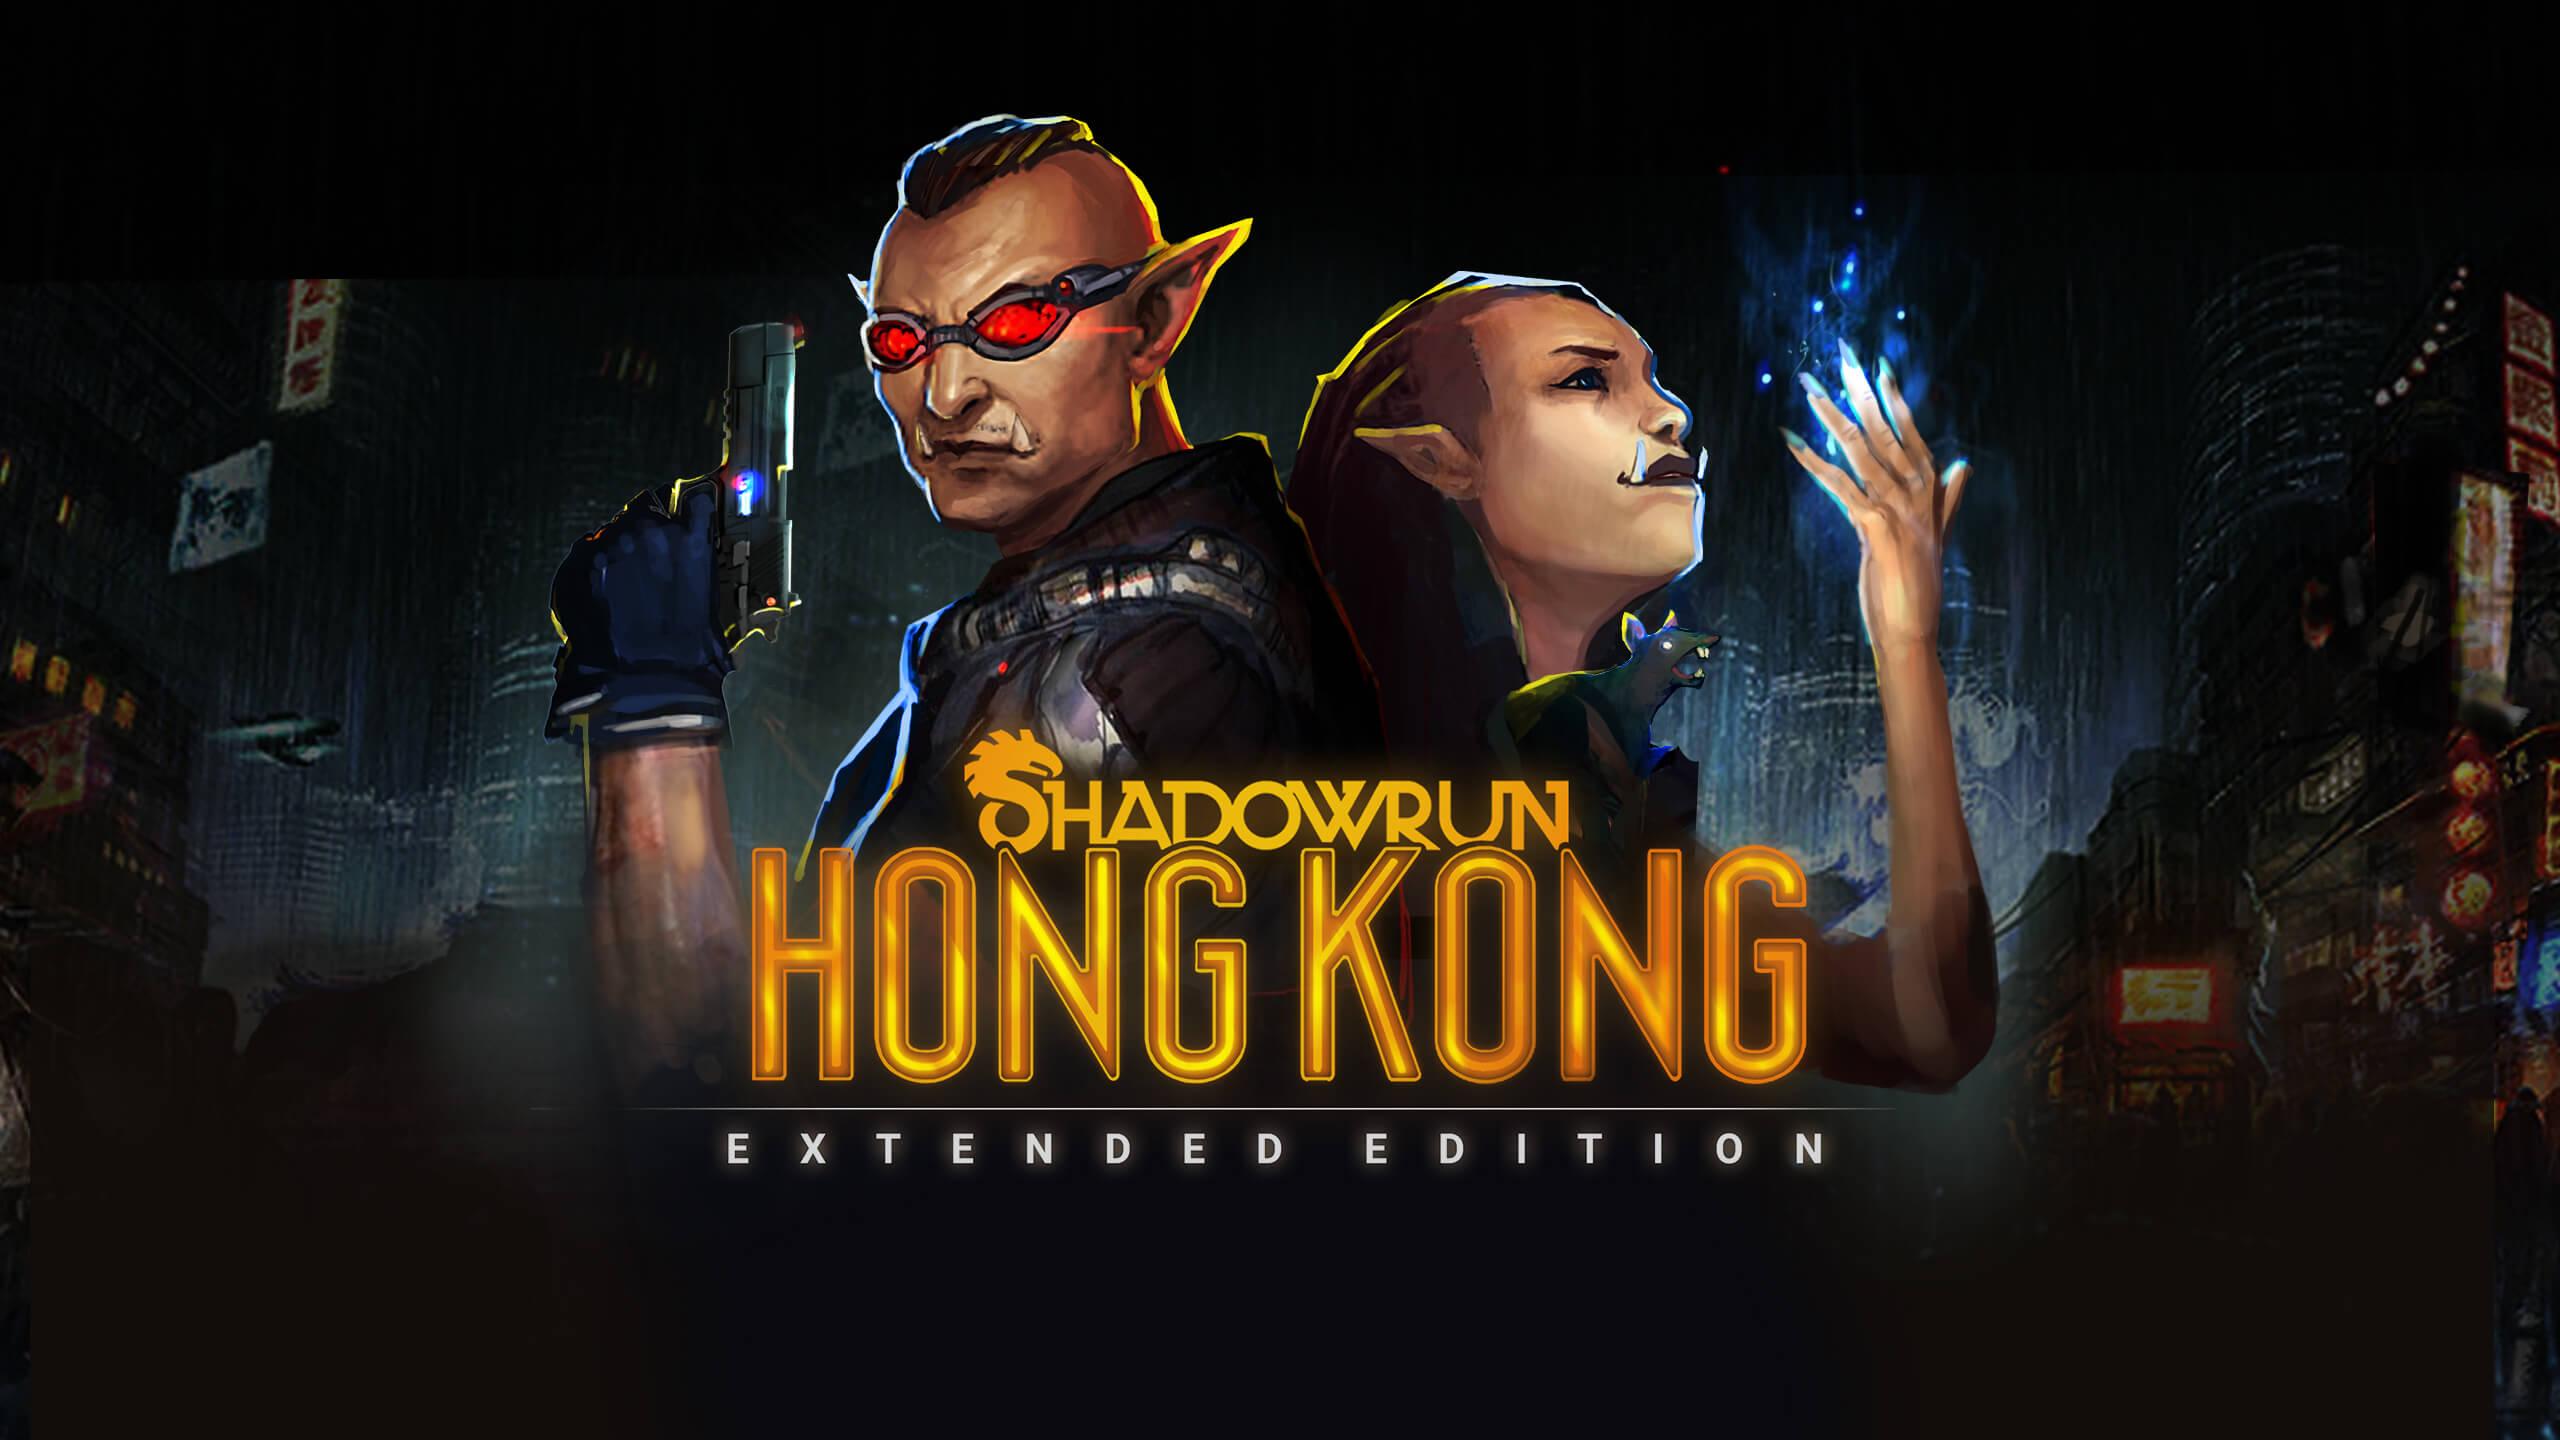 shadowrun hong kong characters